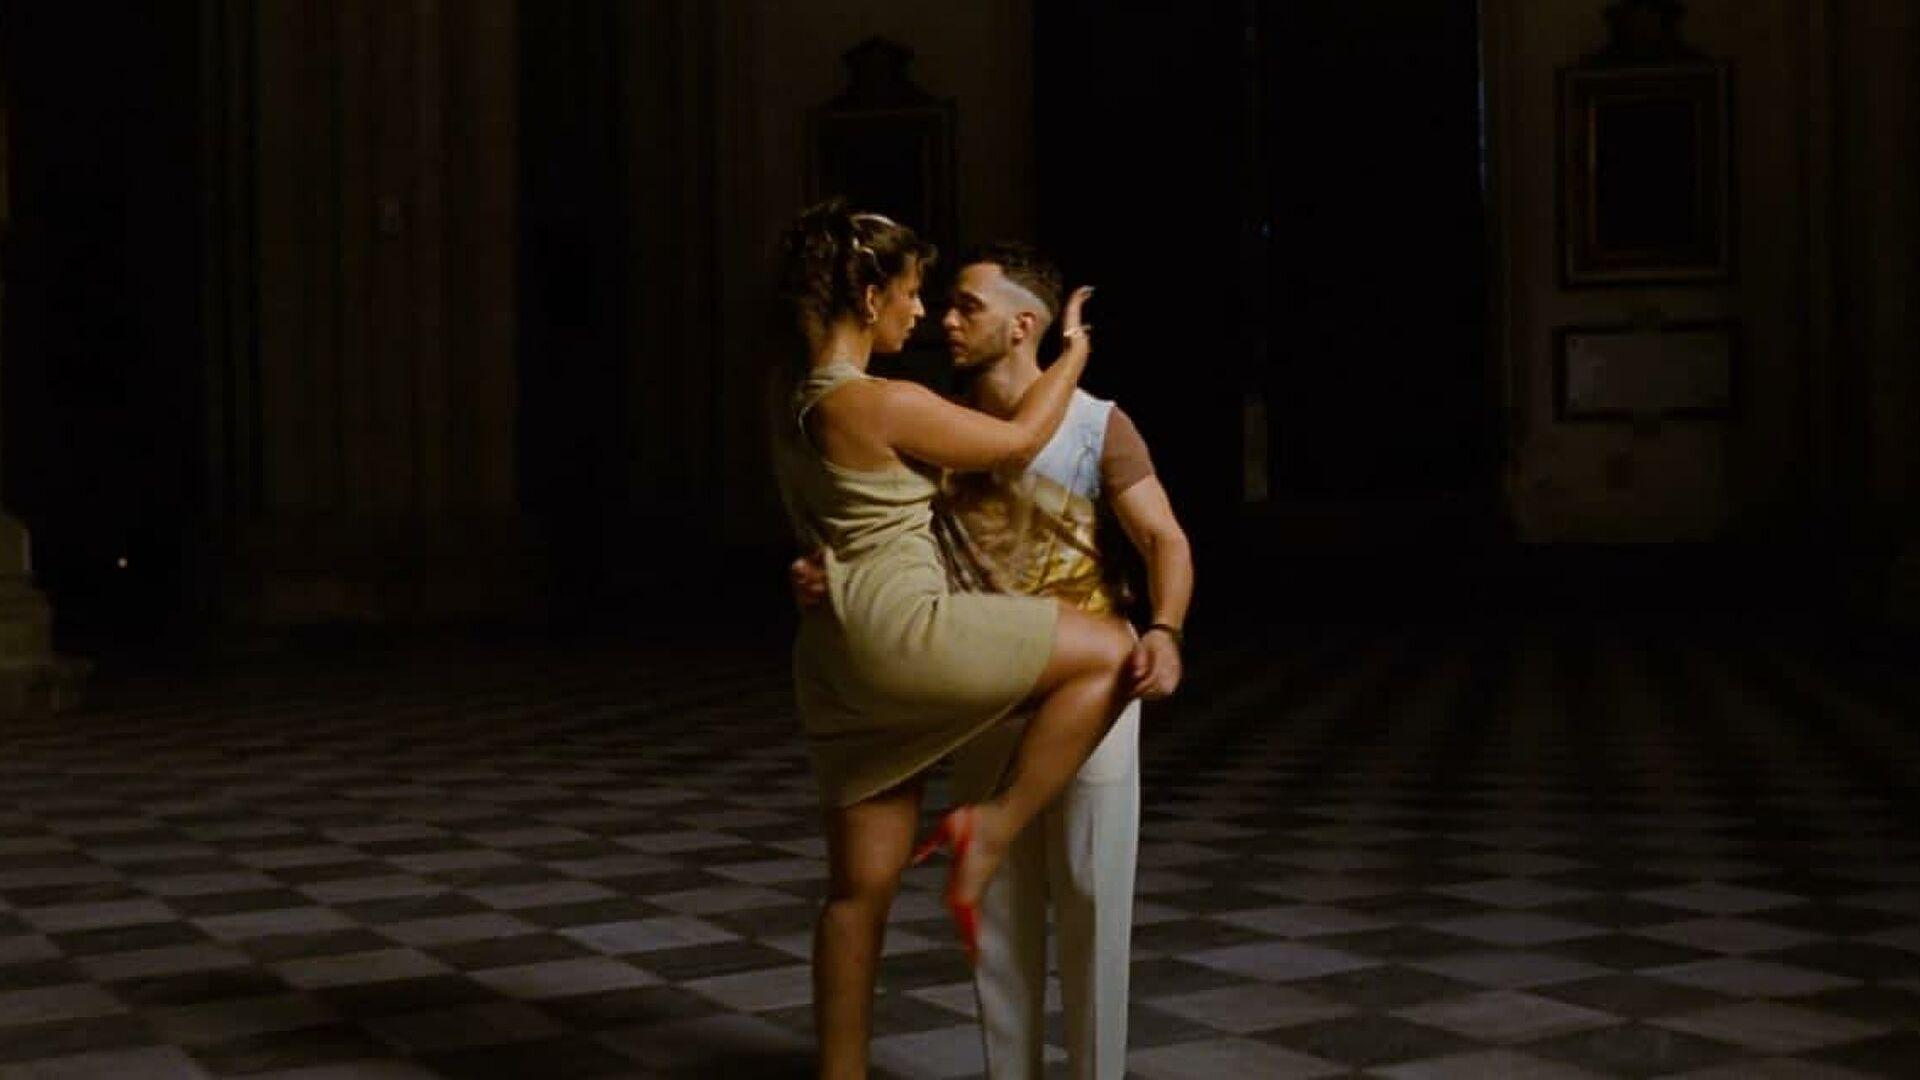 Imagen del videoclip 'Ateo', de C Tangana y Nathy Peluso en la Catedral de Toledo